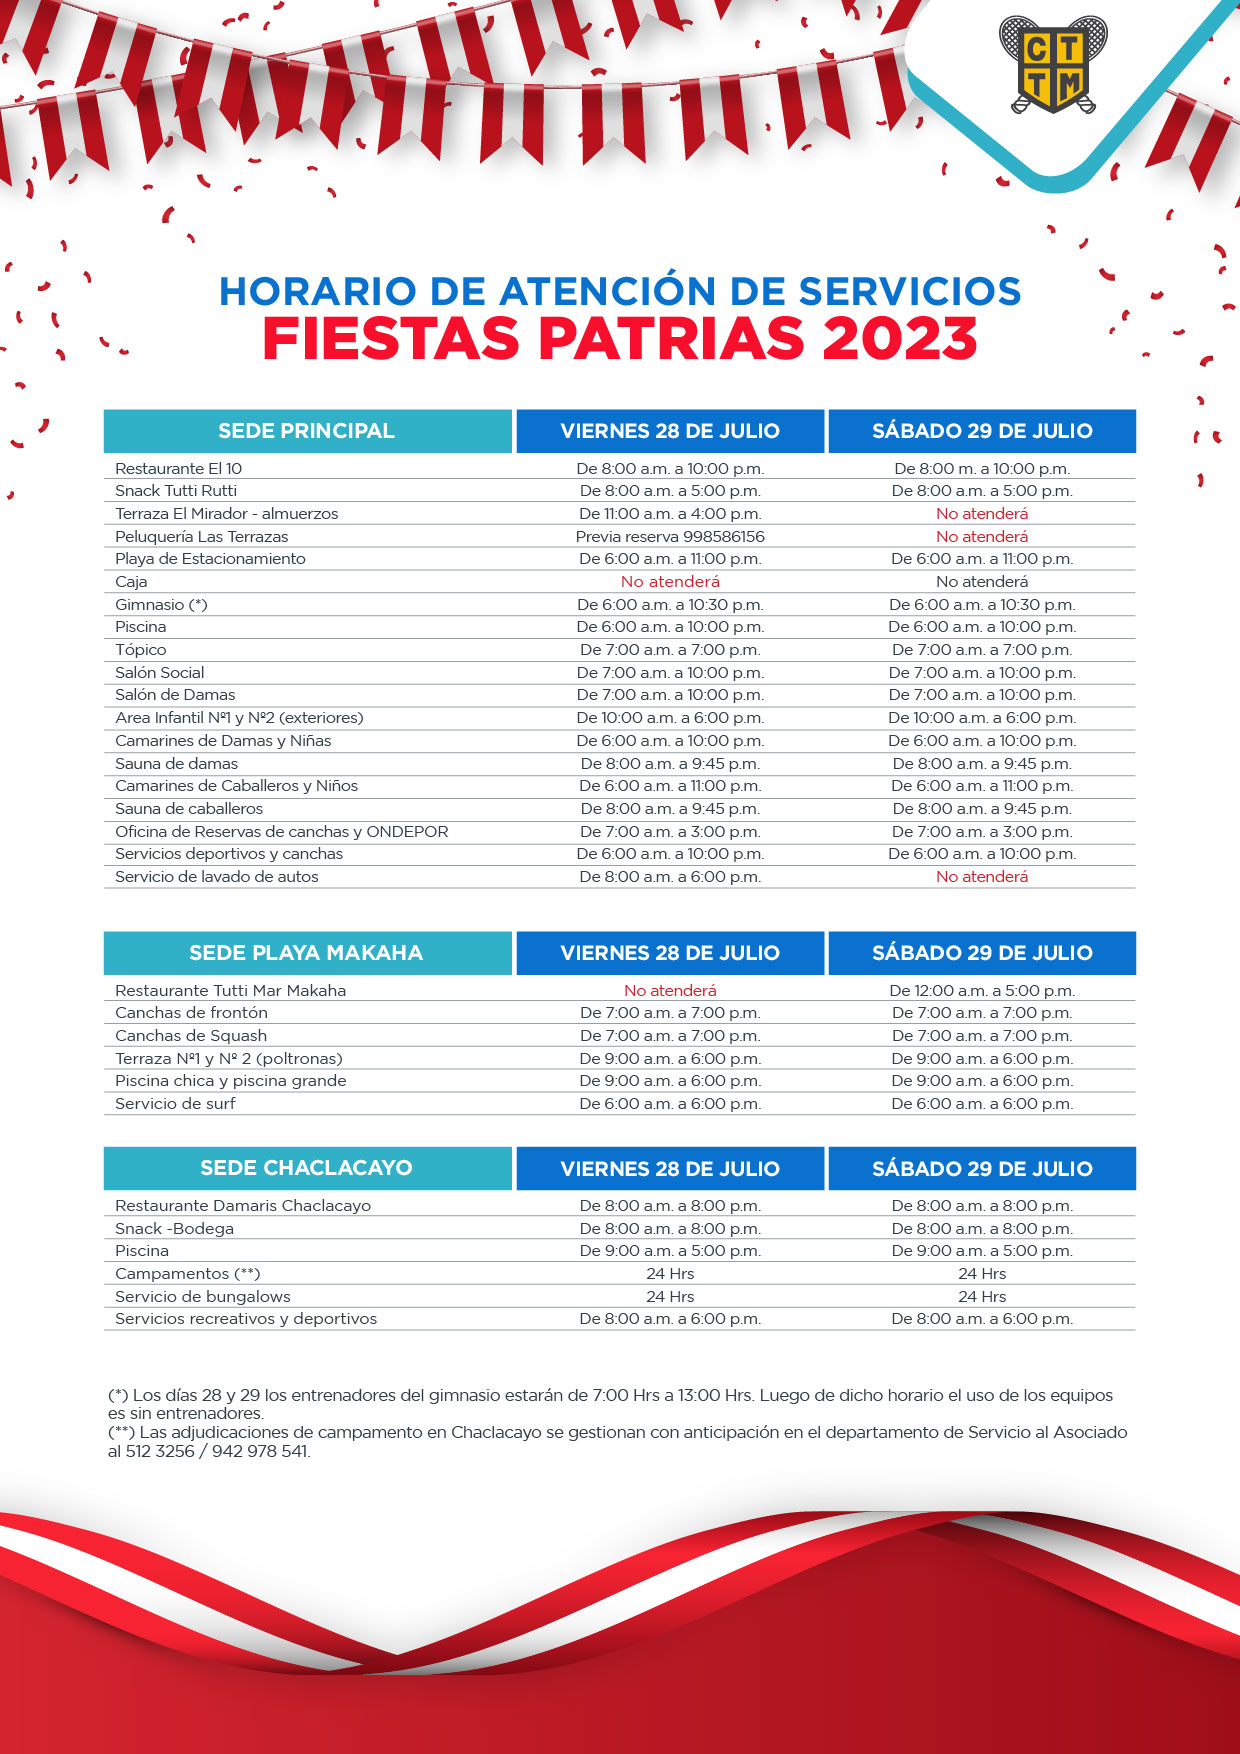 HORARIO DE ATENCIÓN DE SERVICIOS - FIESTAS PATRIAS 2023